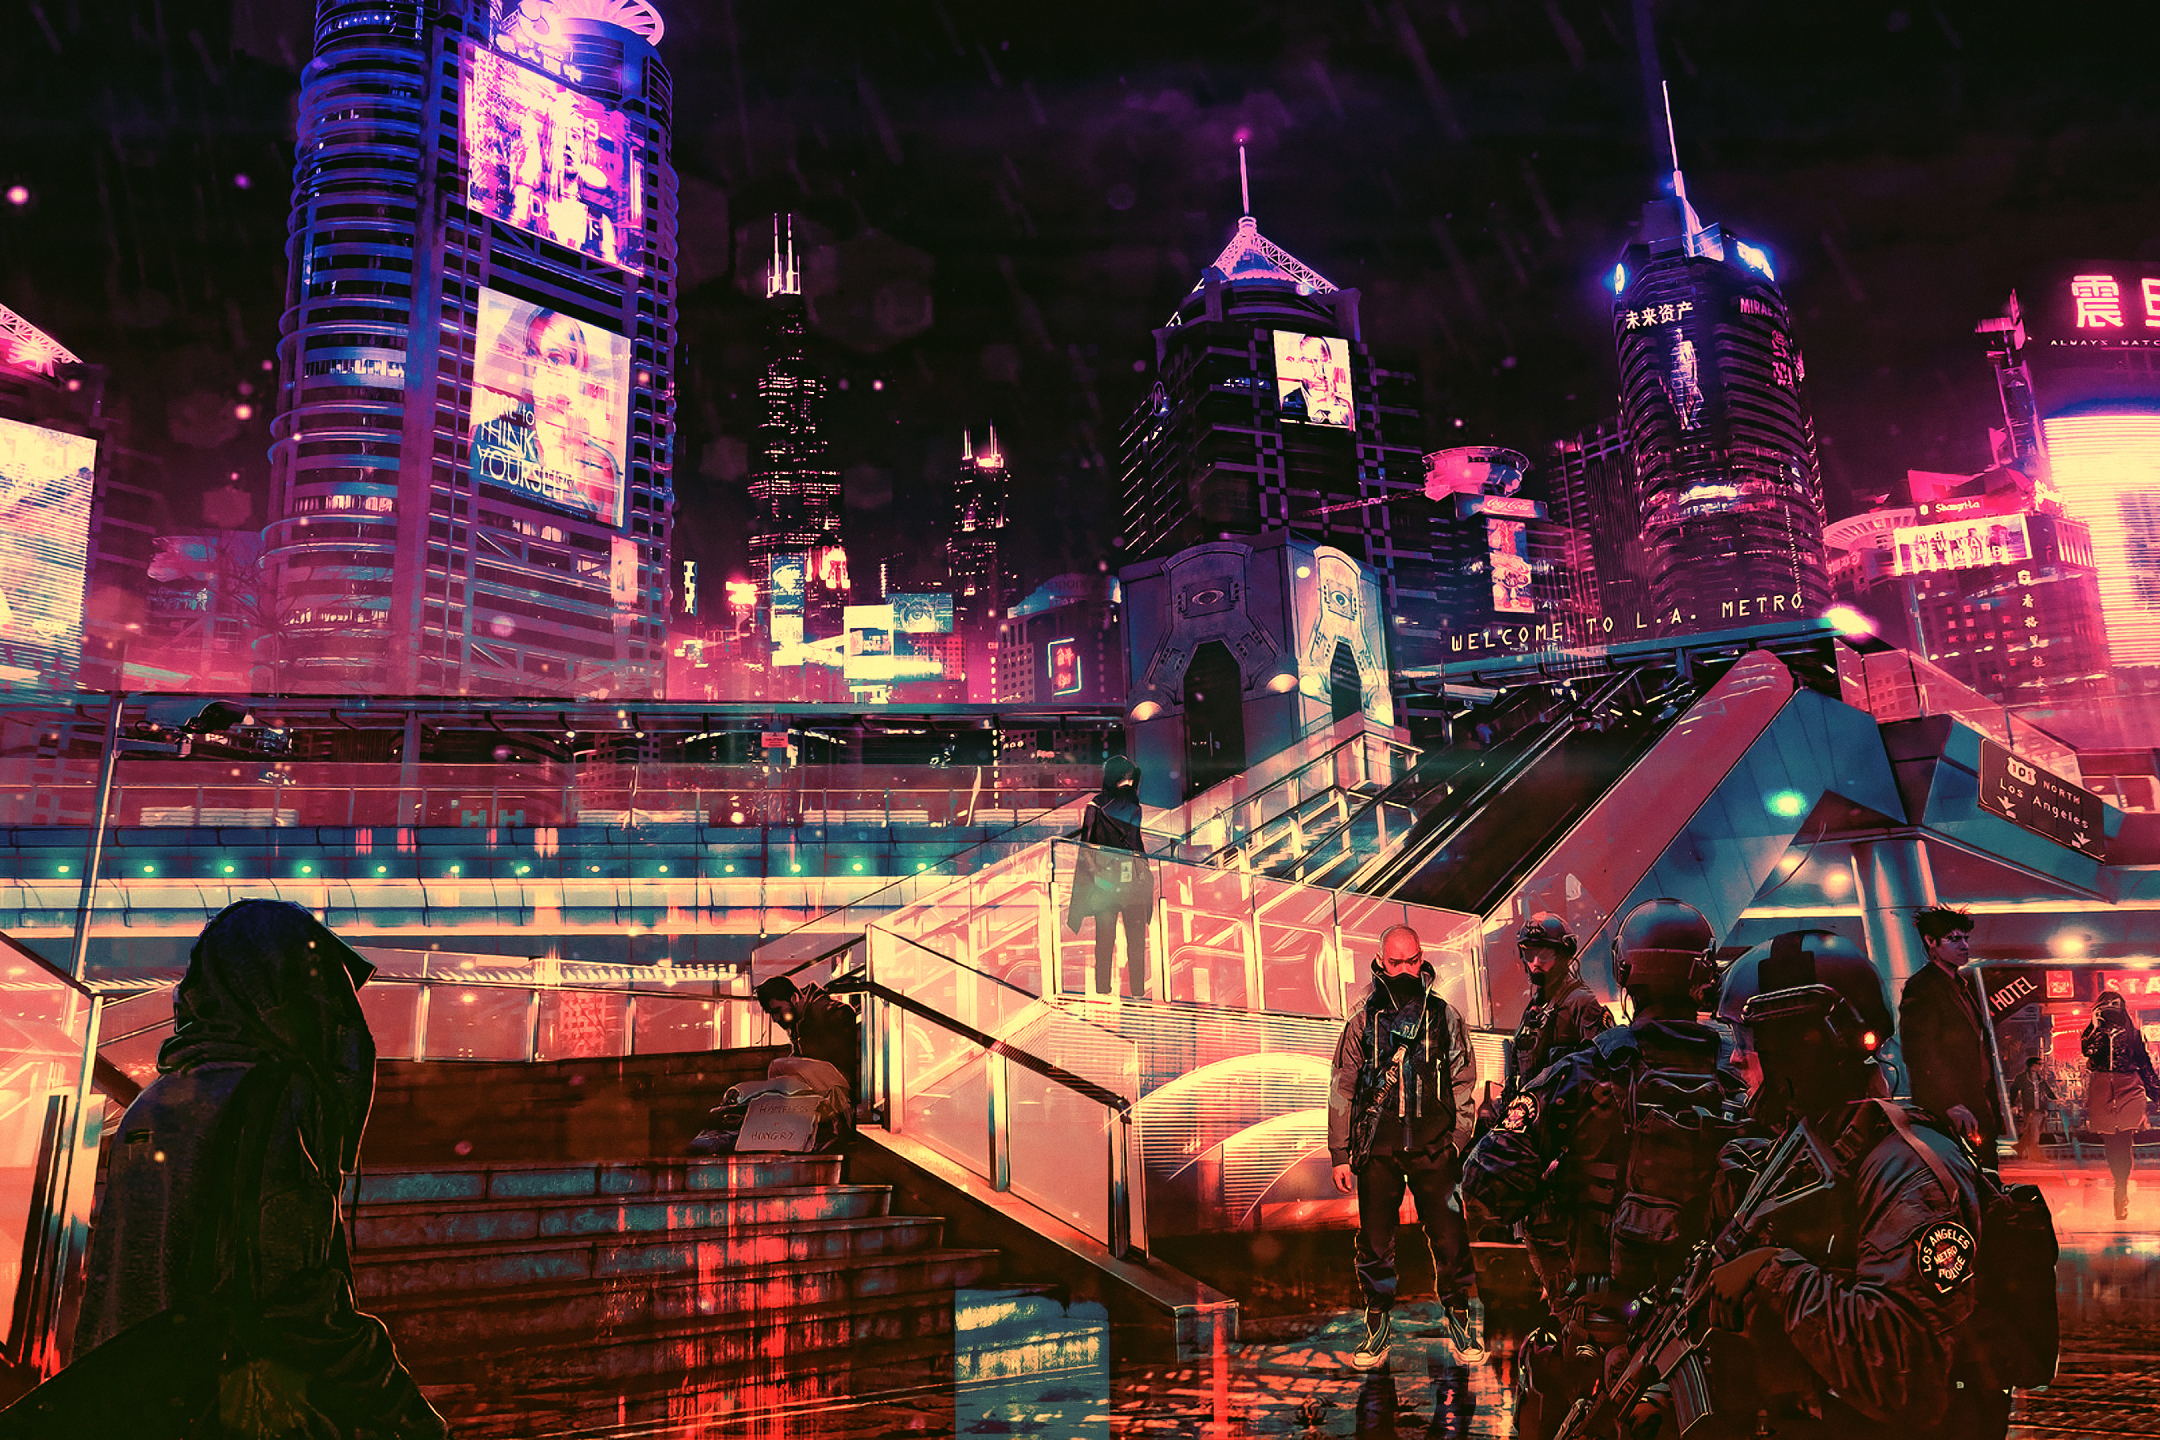 Cyberpunk city, futuristic, spaceships, towers, artwork, Sci-fi, HD  wallpaper